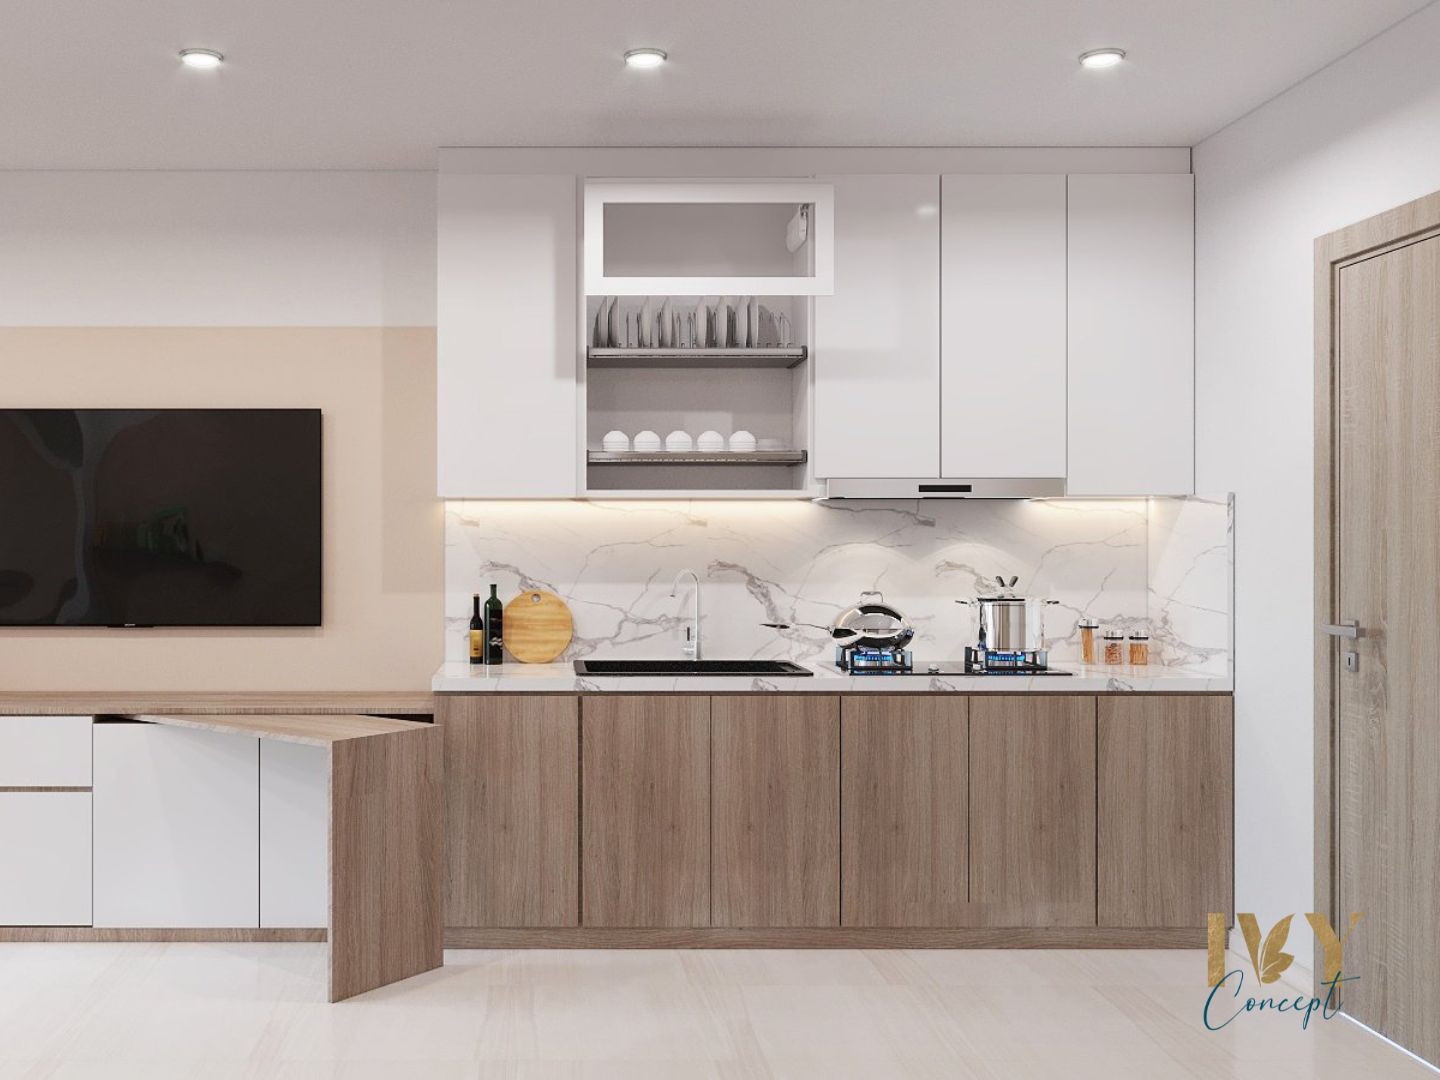 Phòng bếp, phong cách Nhật Bản x Bắc Âu Japandi, thiết kế concept nội thất, căn hộ studio Vinhomes Quận 9